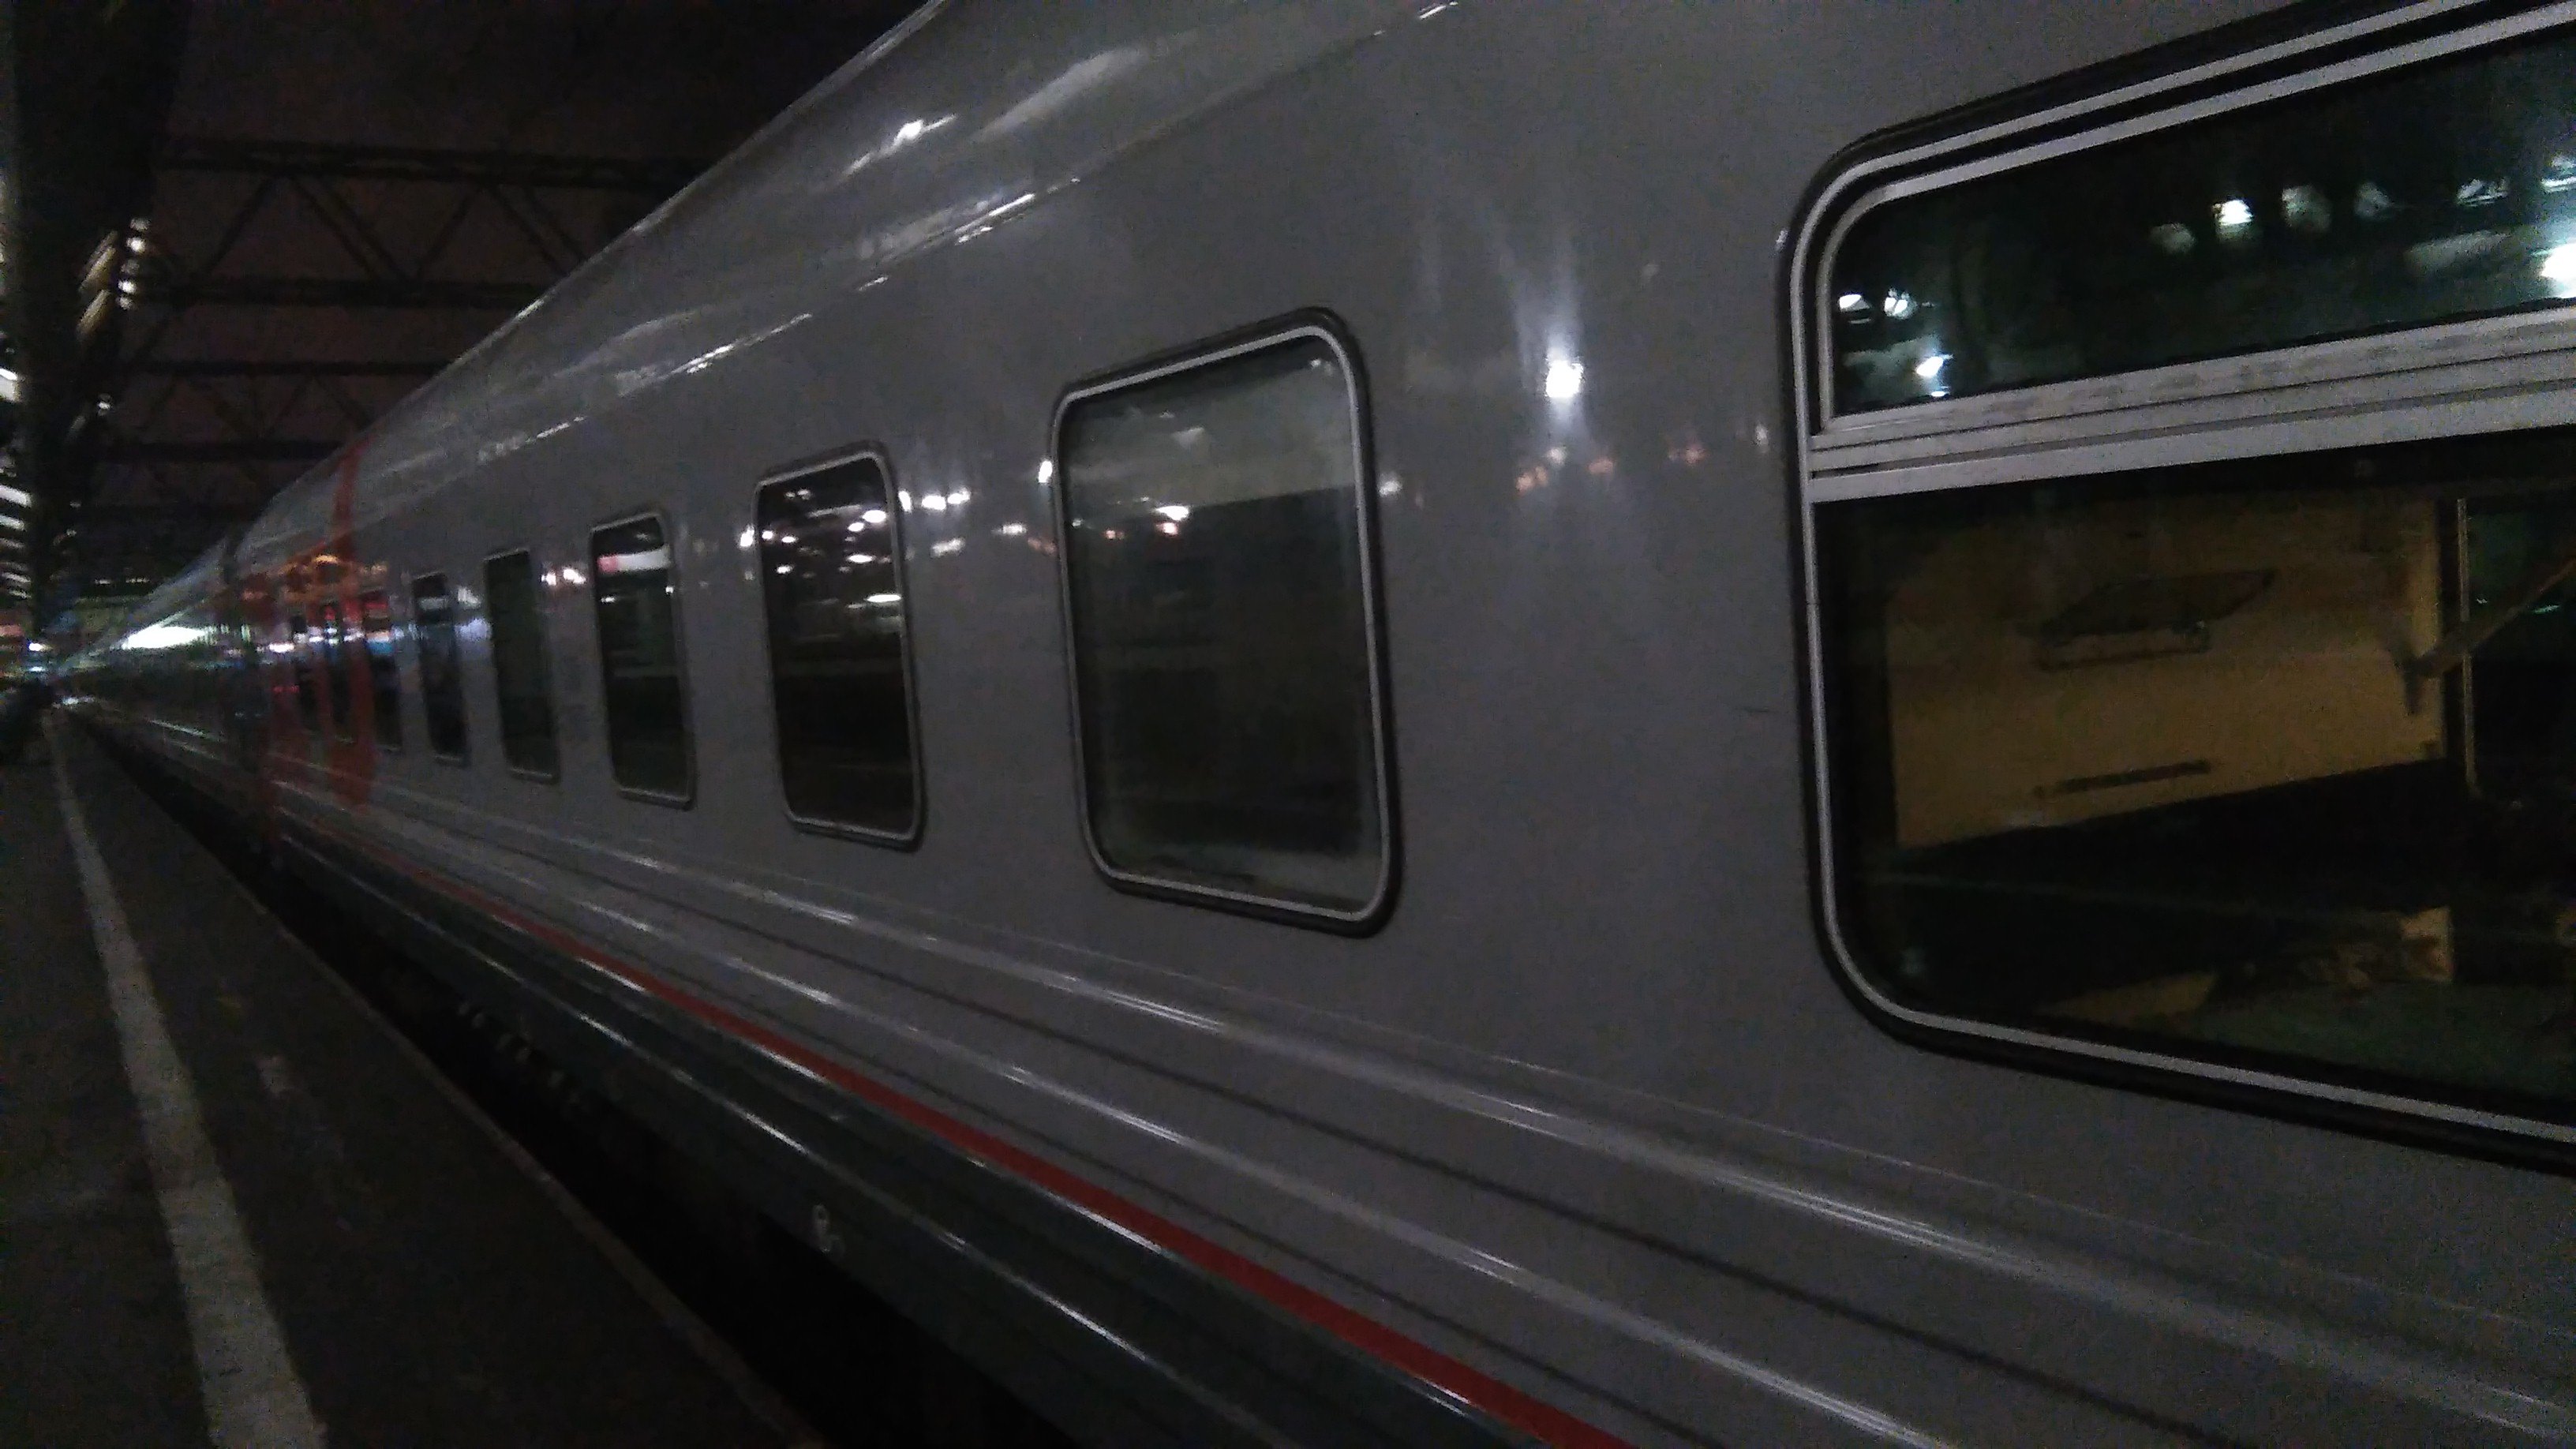 поезд 004а экспресс москва санкт петербург